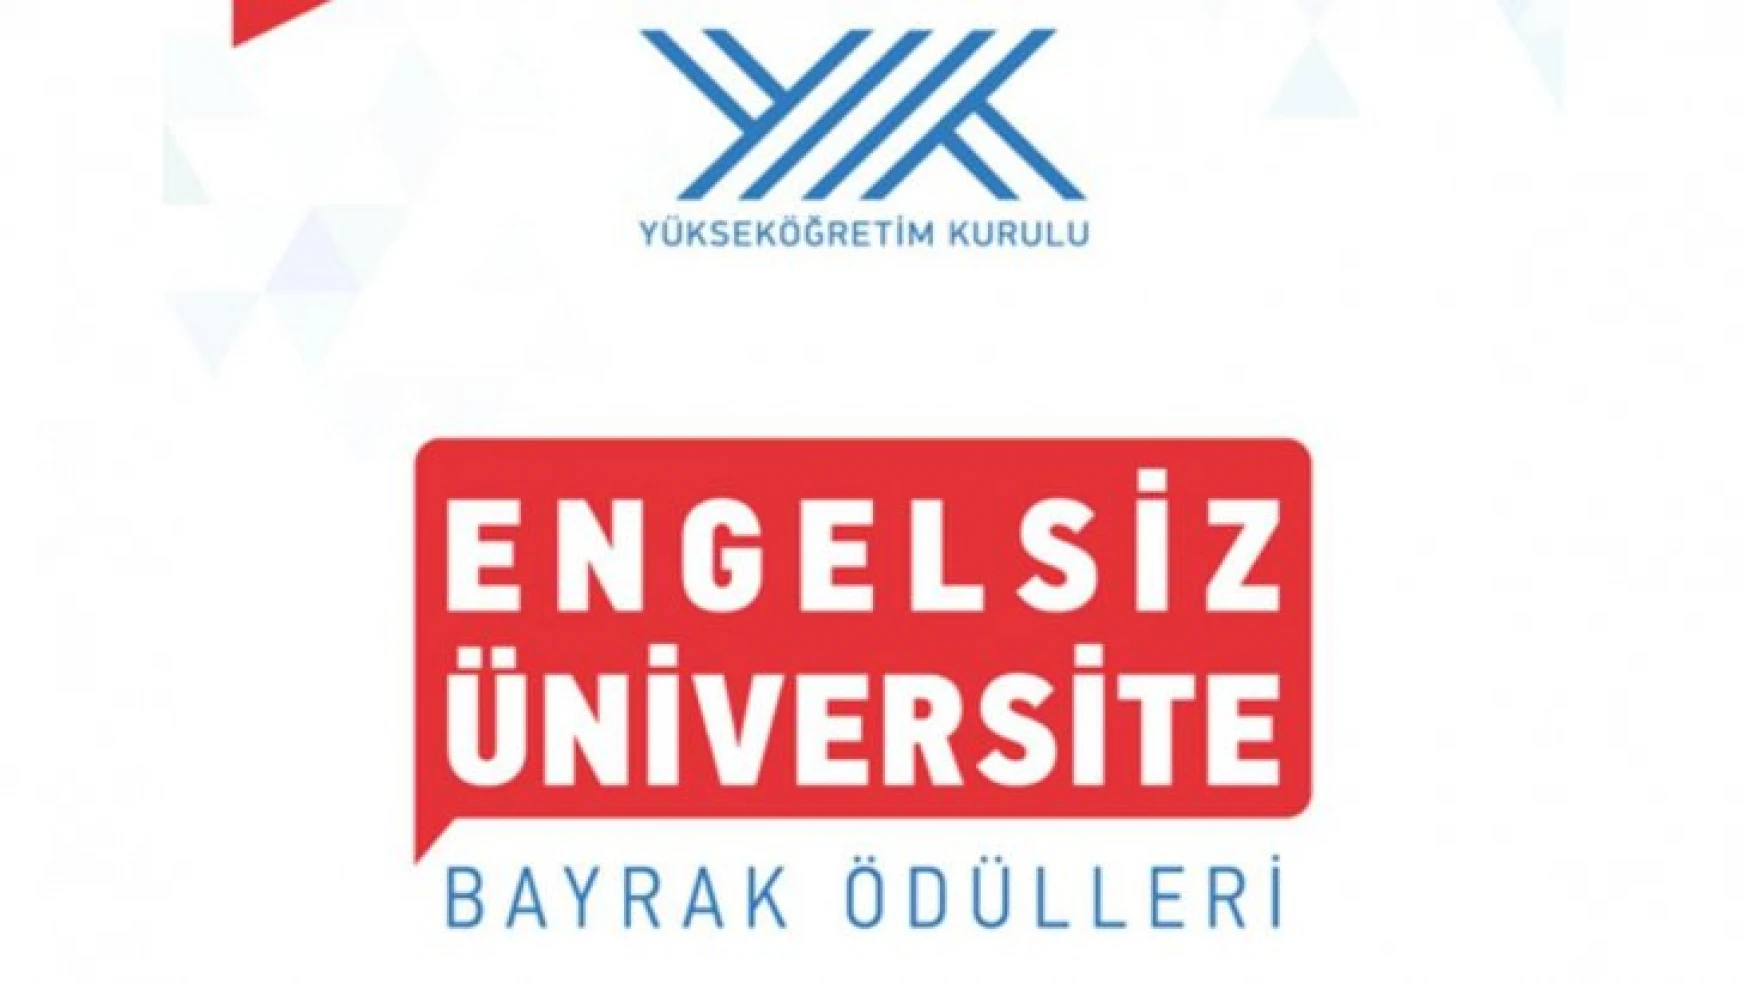 YÖK Engelsiz Üniversite Ödülleri'nde İnönü Üniversitesine 10 Turuncu Bayrak Ödülü